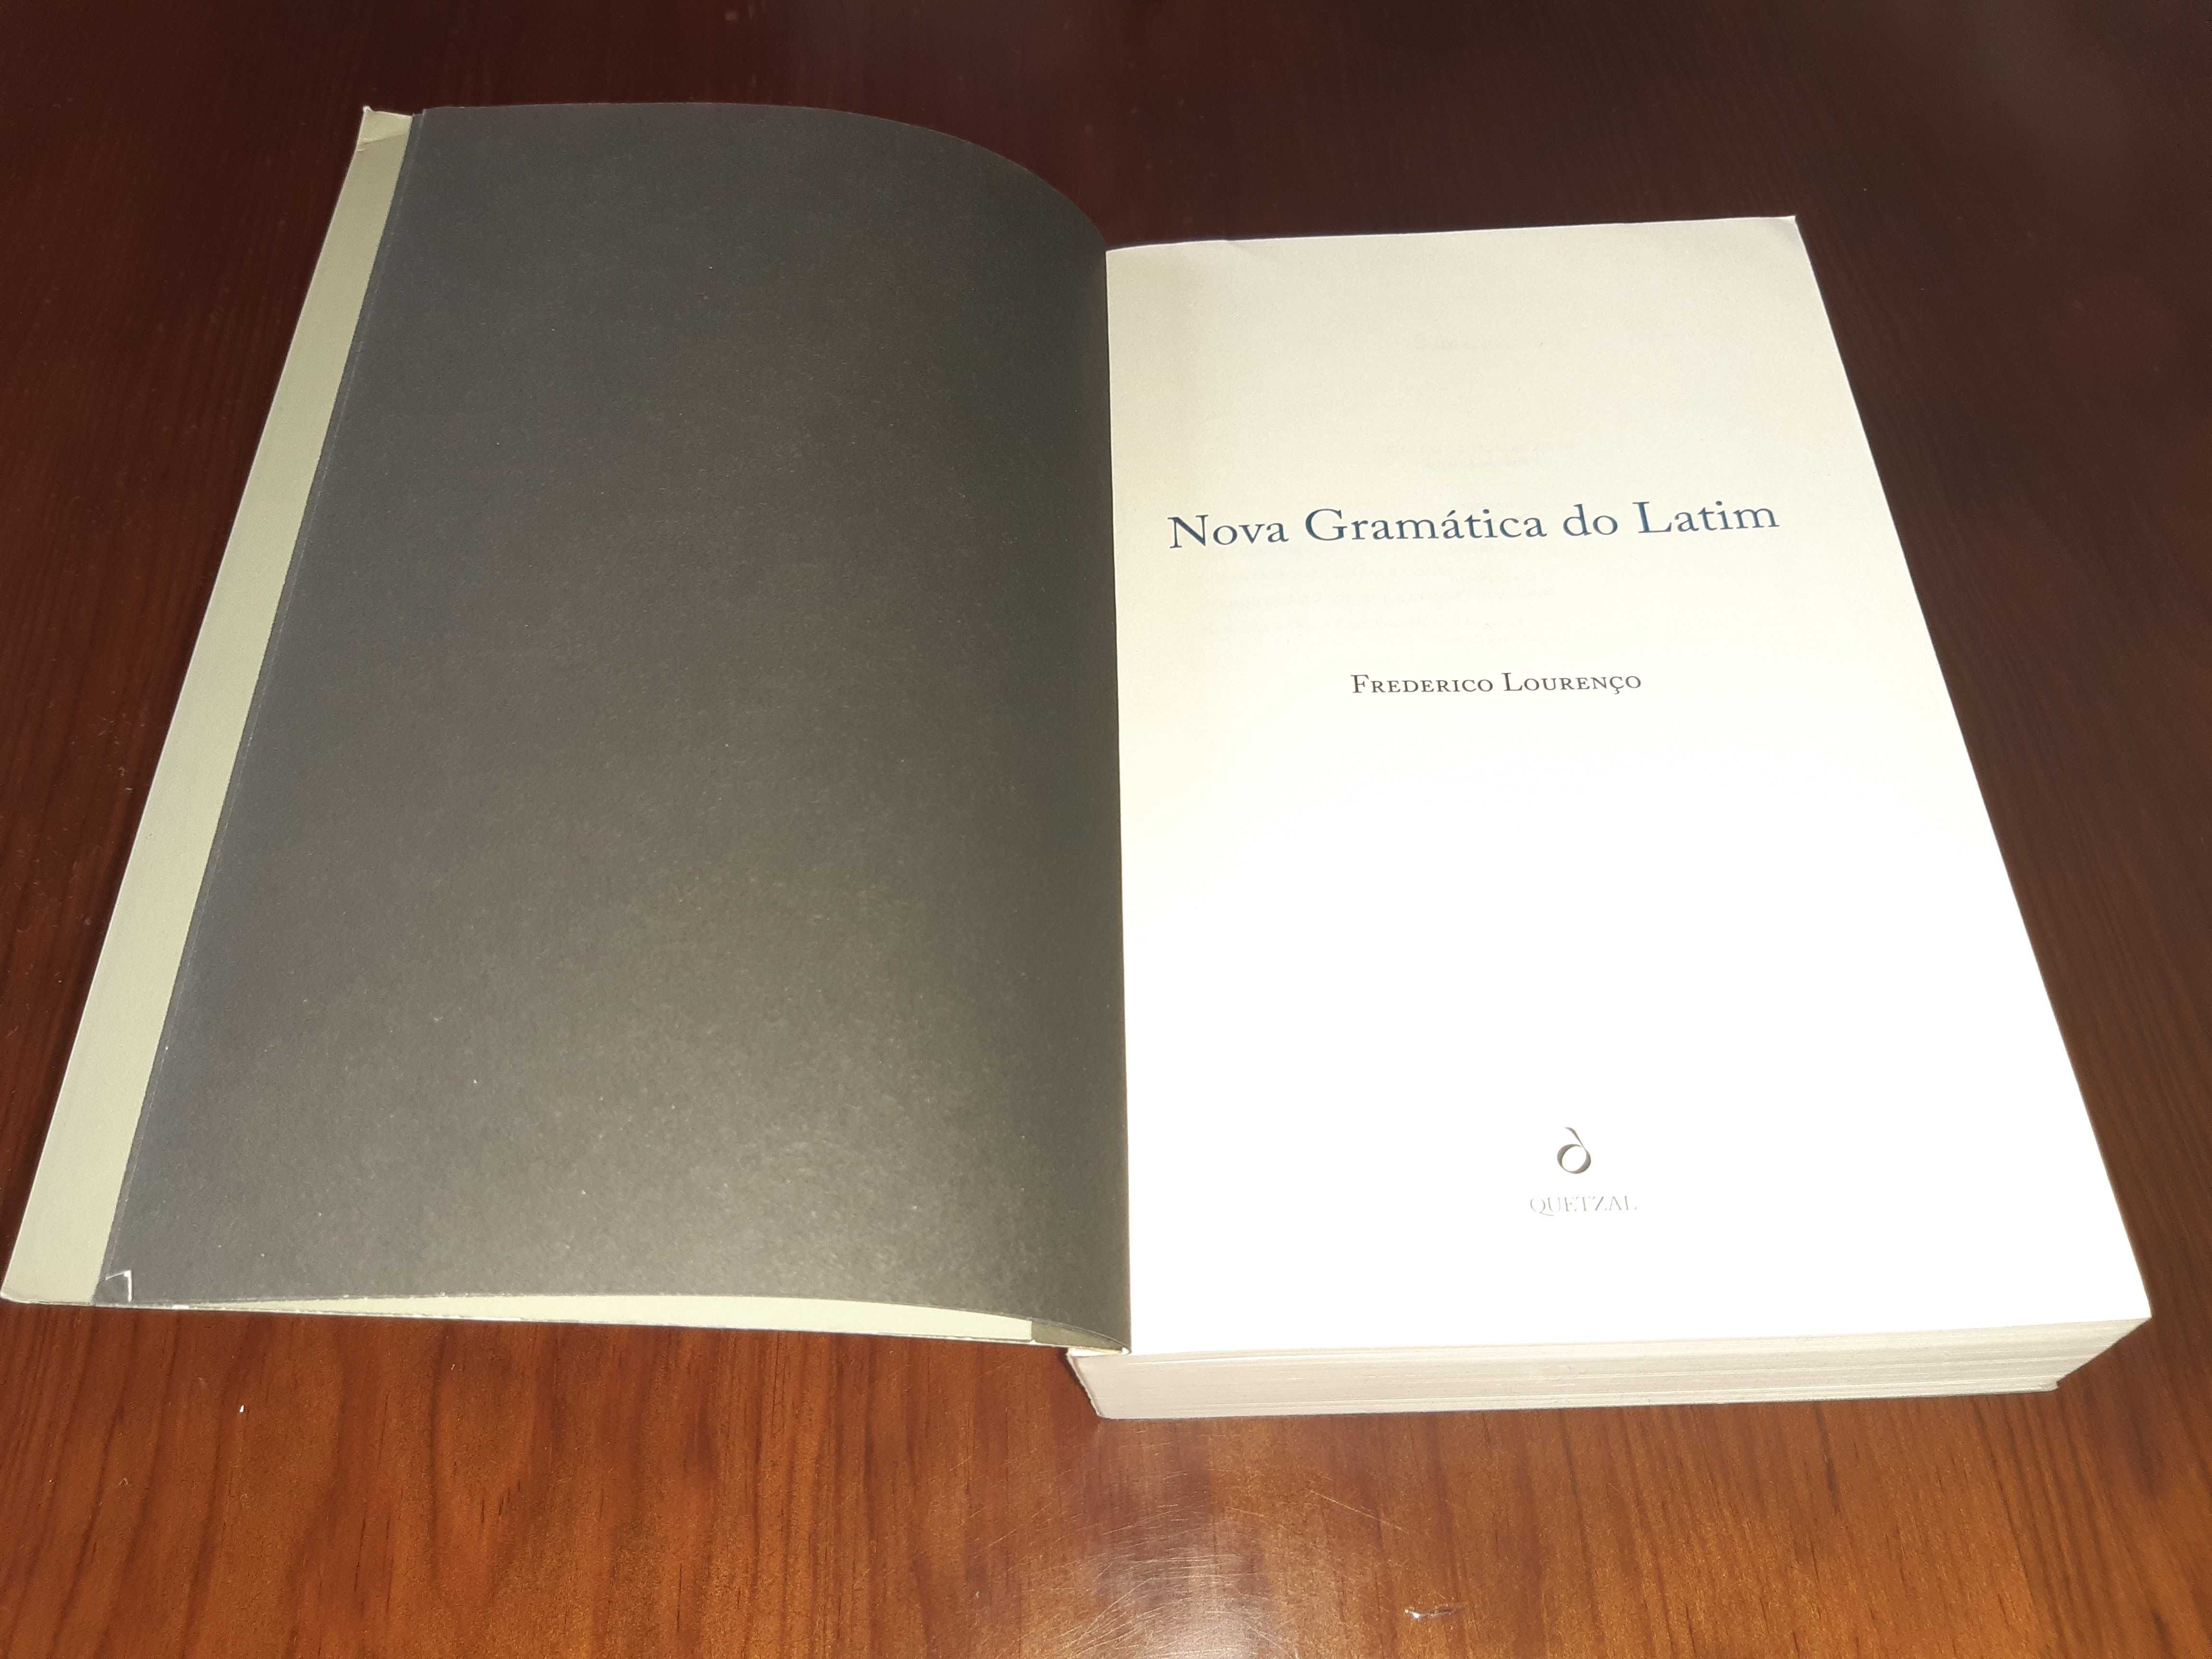 Livro "Nova Gramática do Latim"